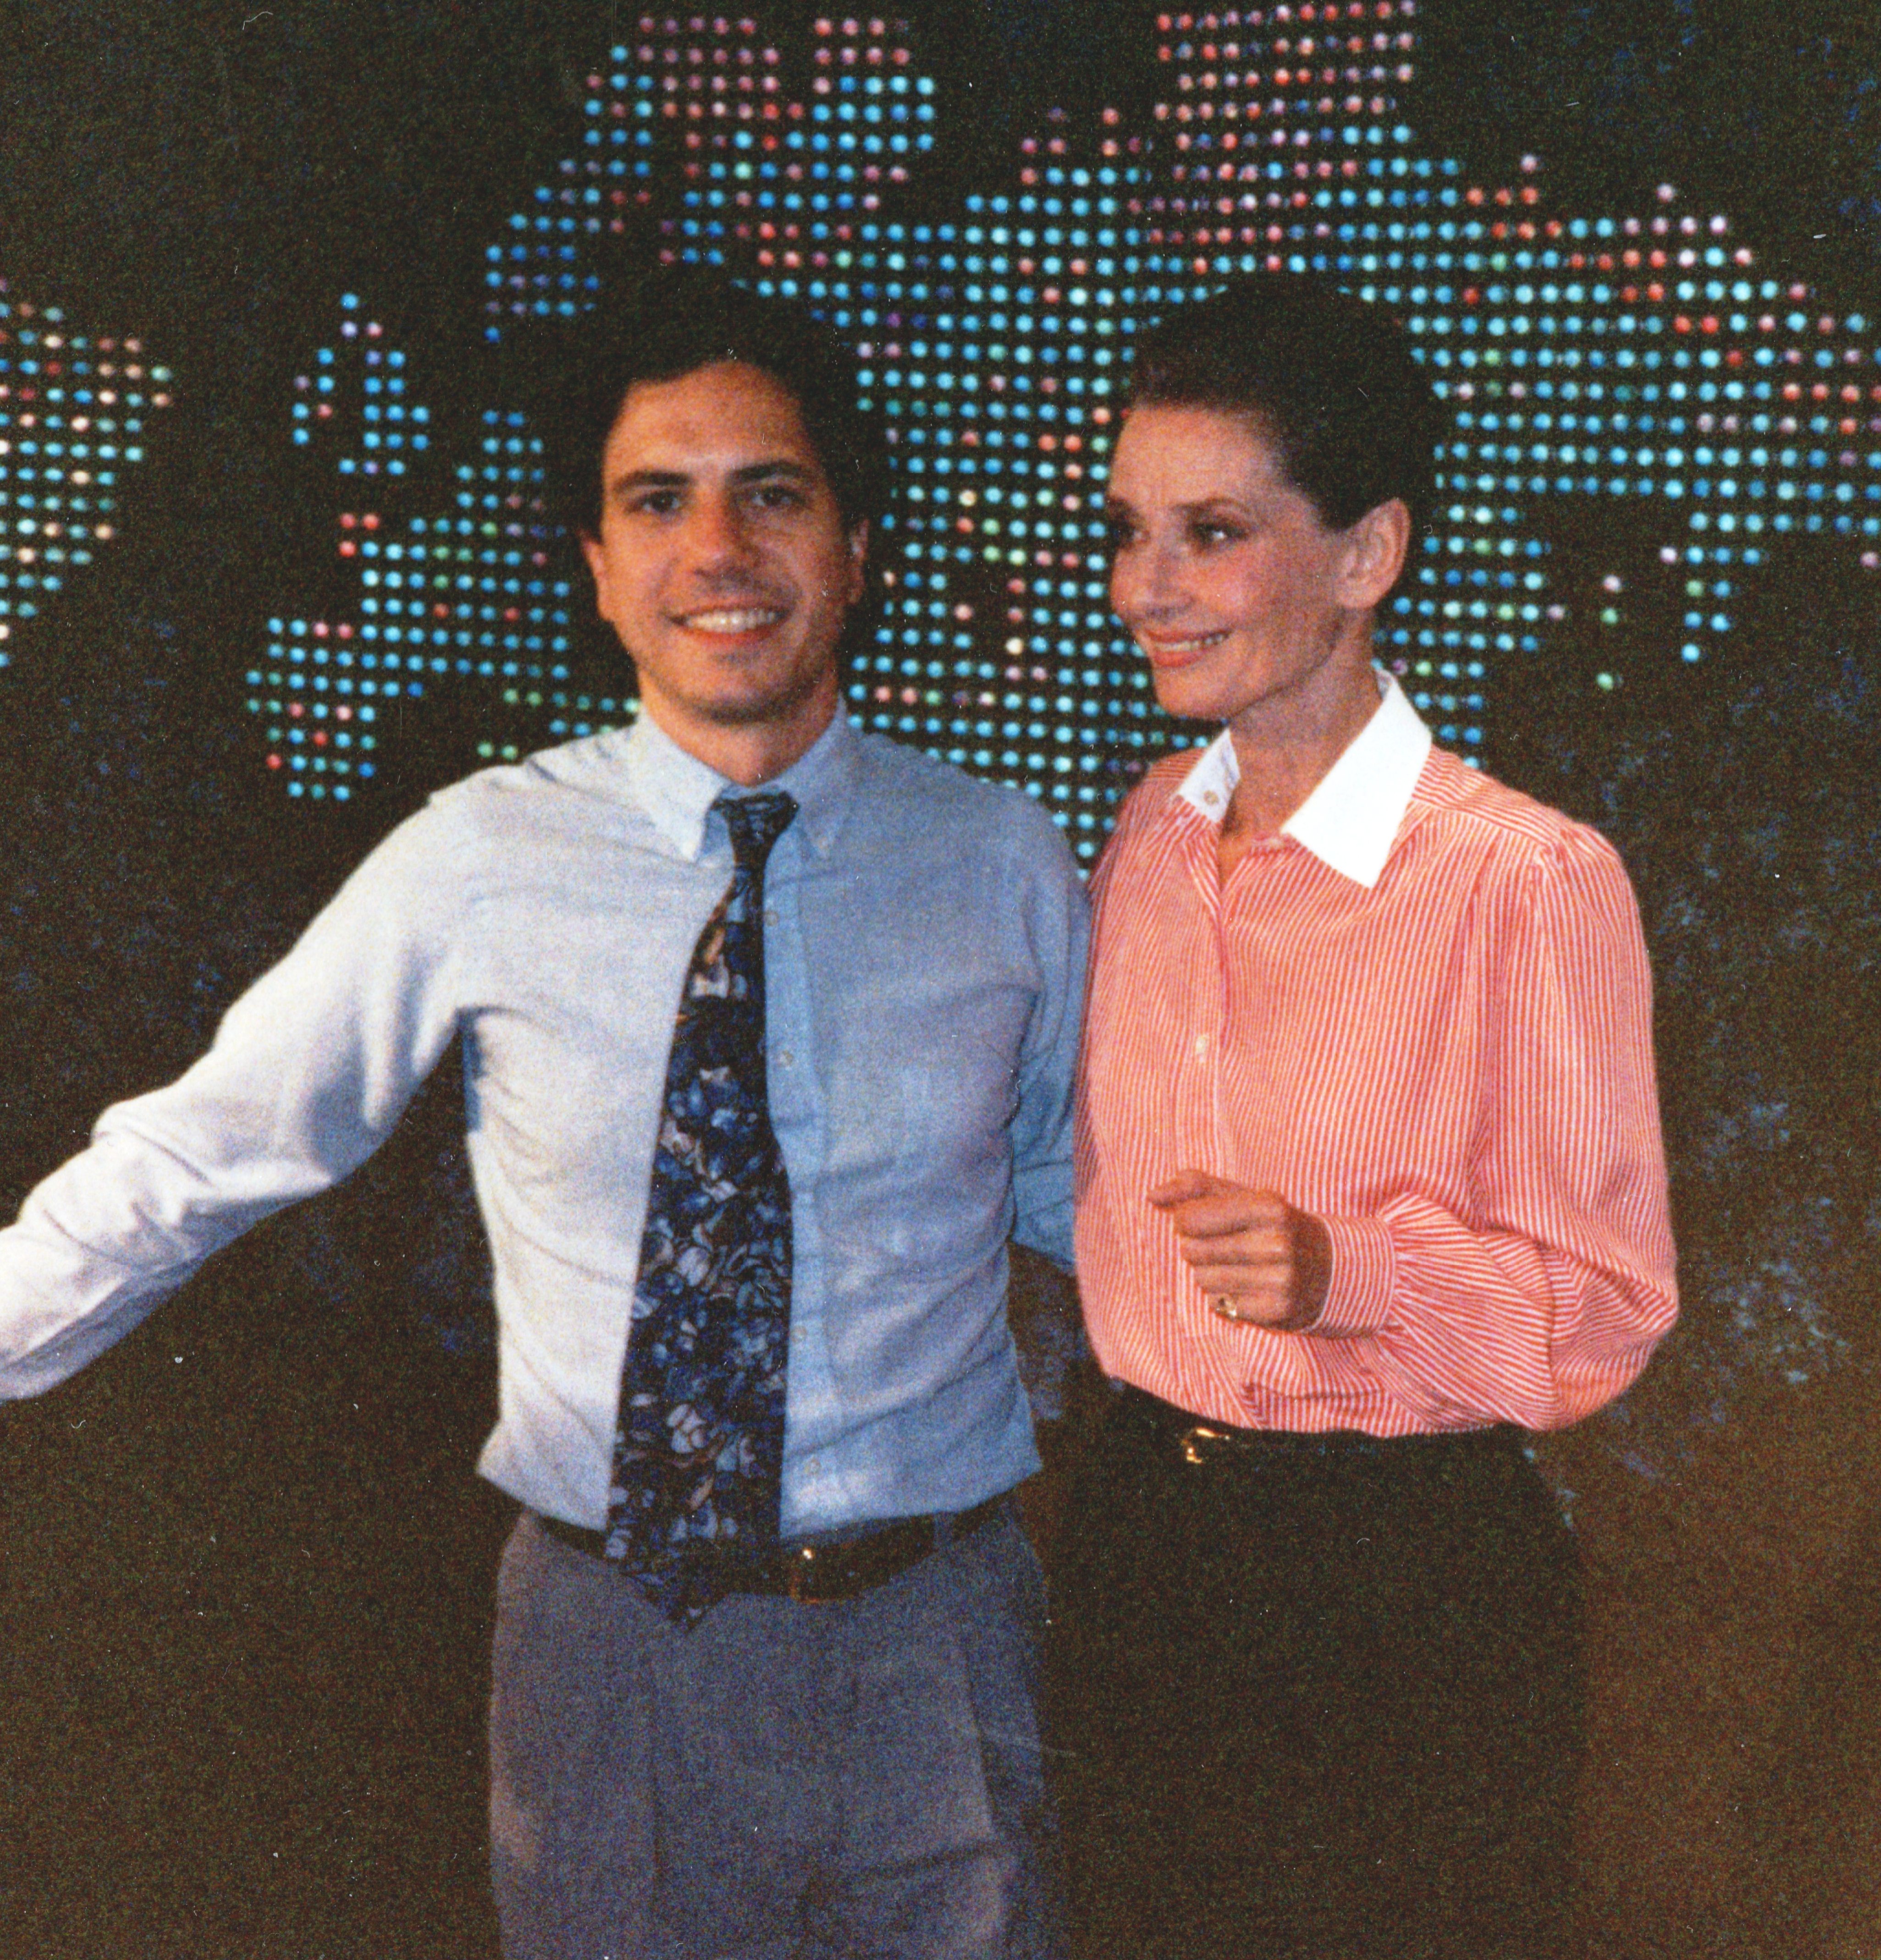 Peter Tedeschi and Audrey Hepburn on set in 1992.